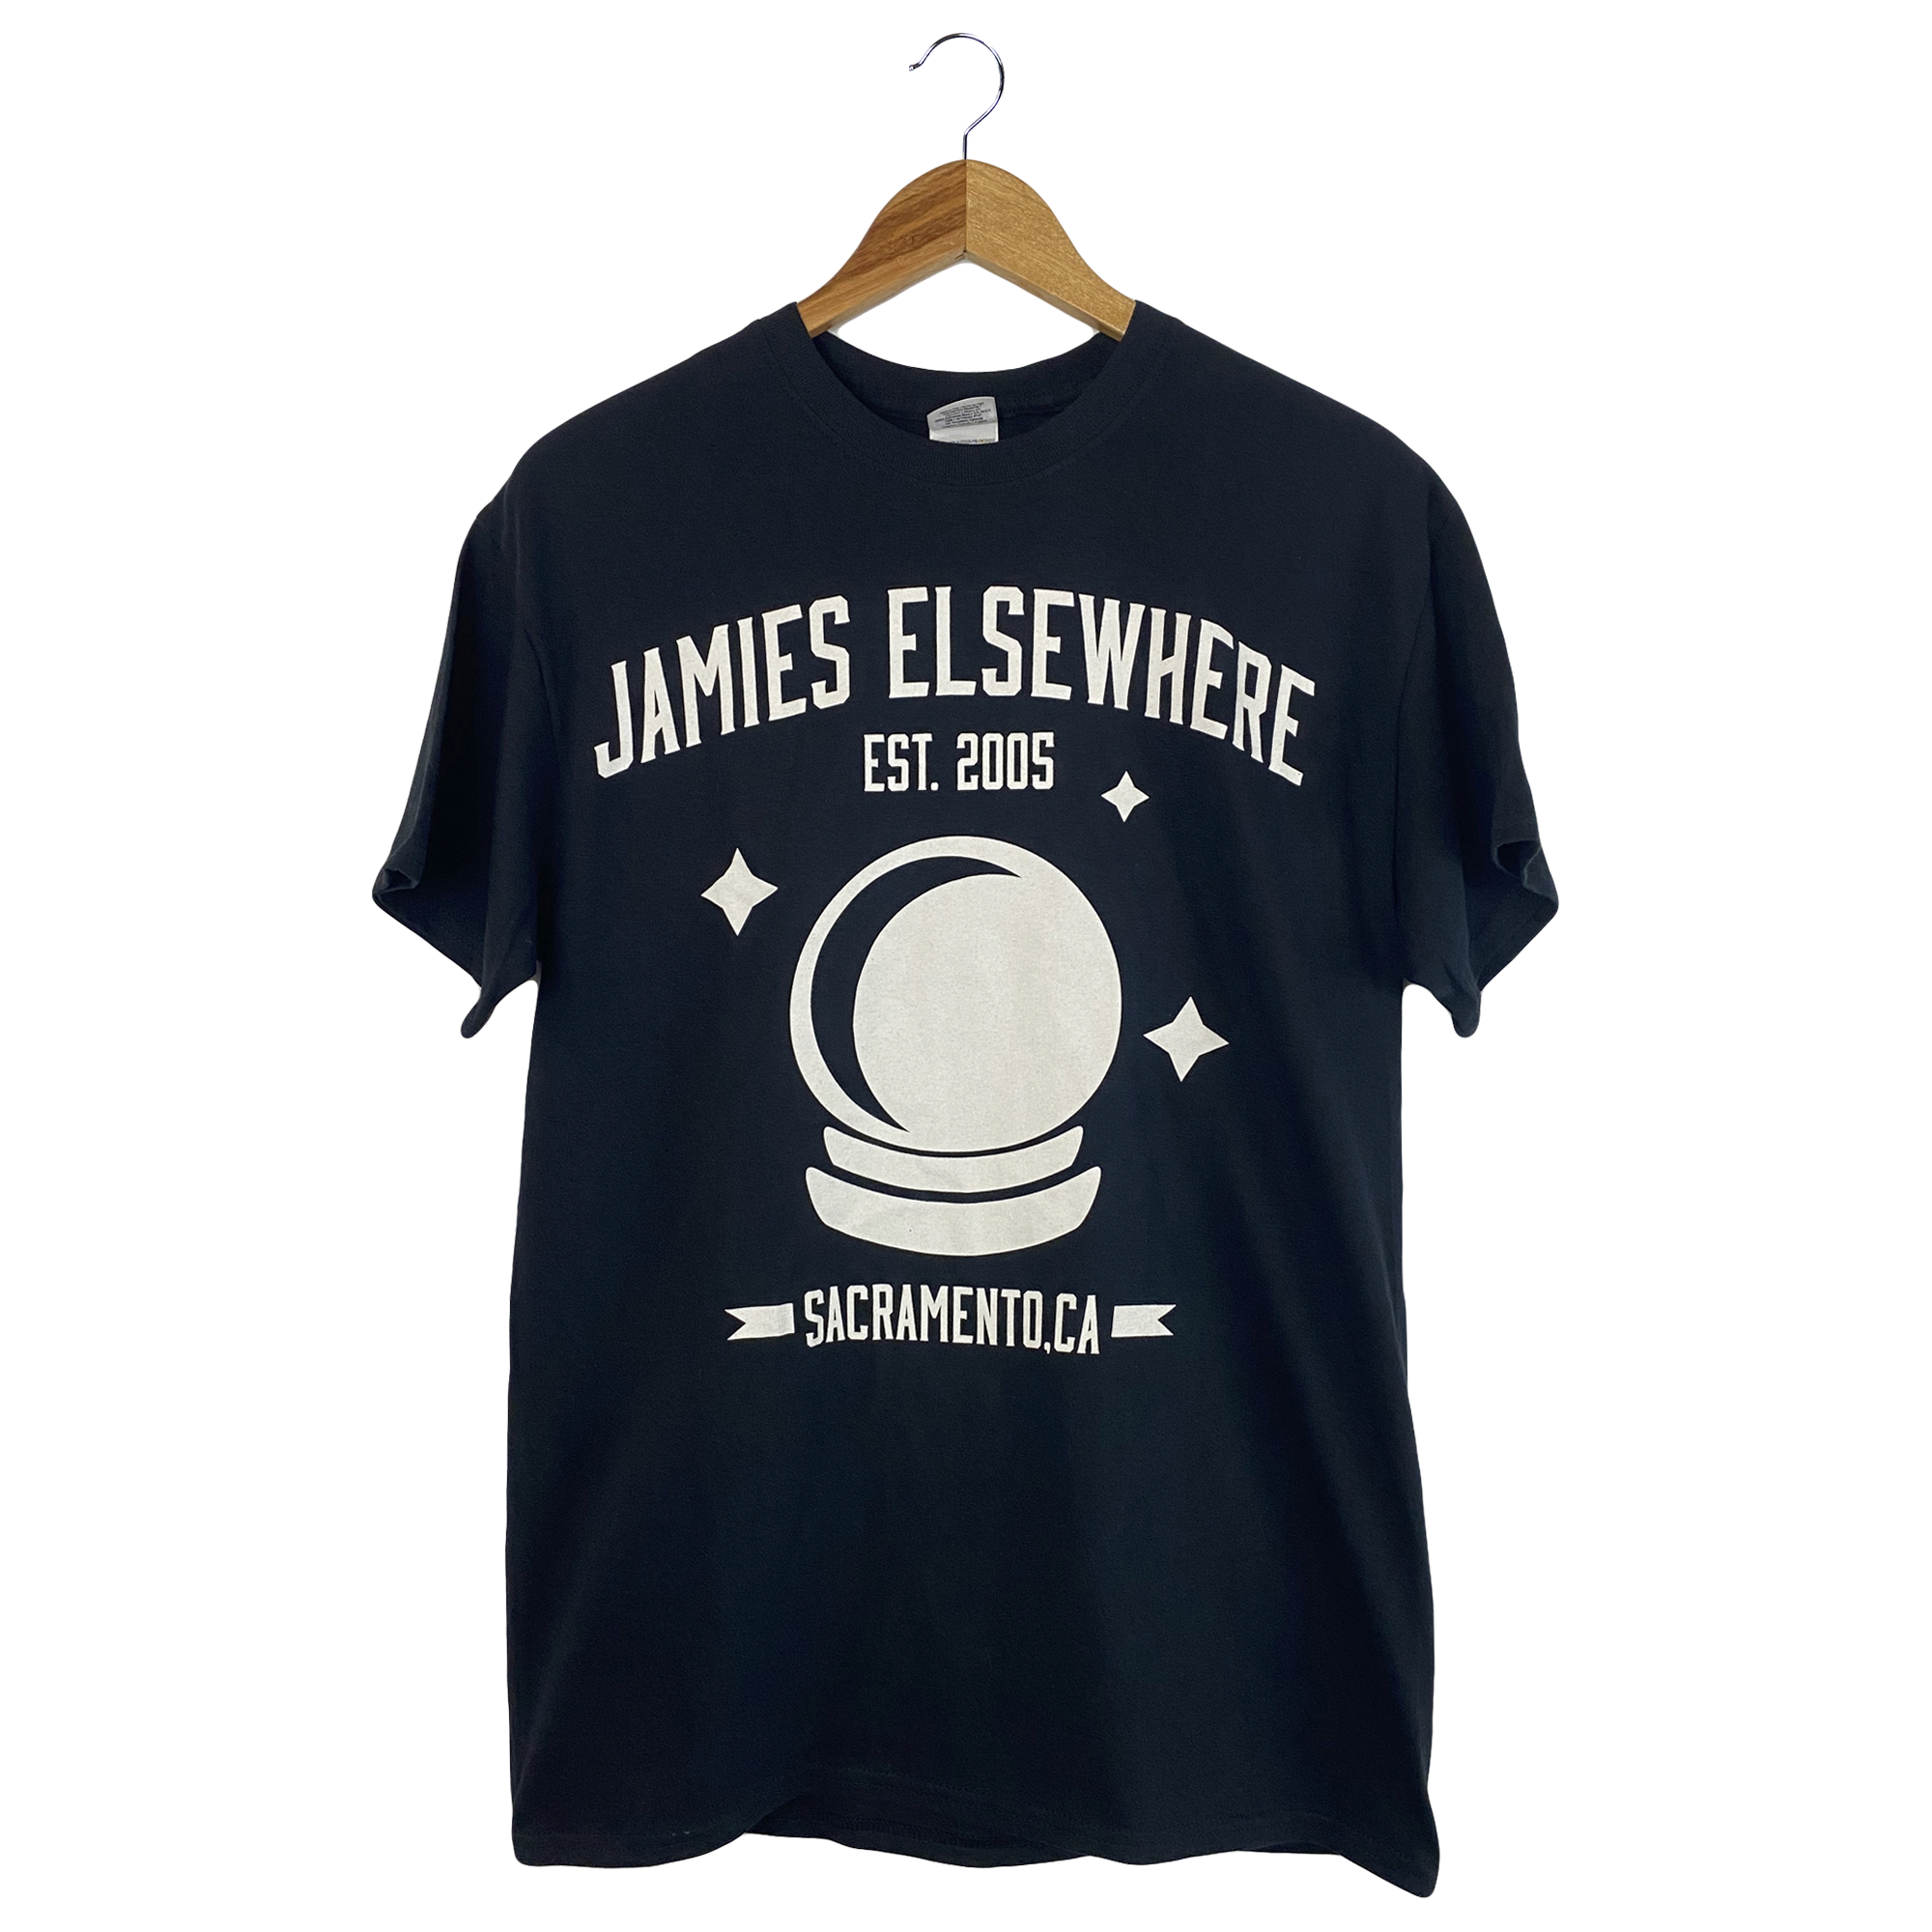 Jamie's Elsewhere - Globe Shirt